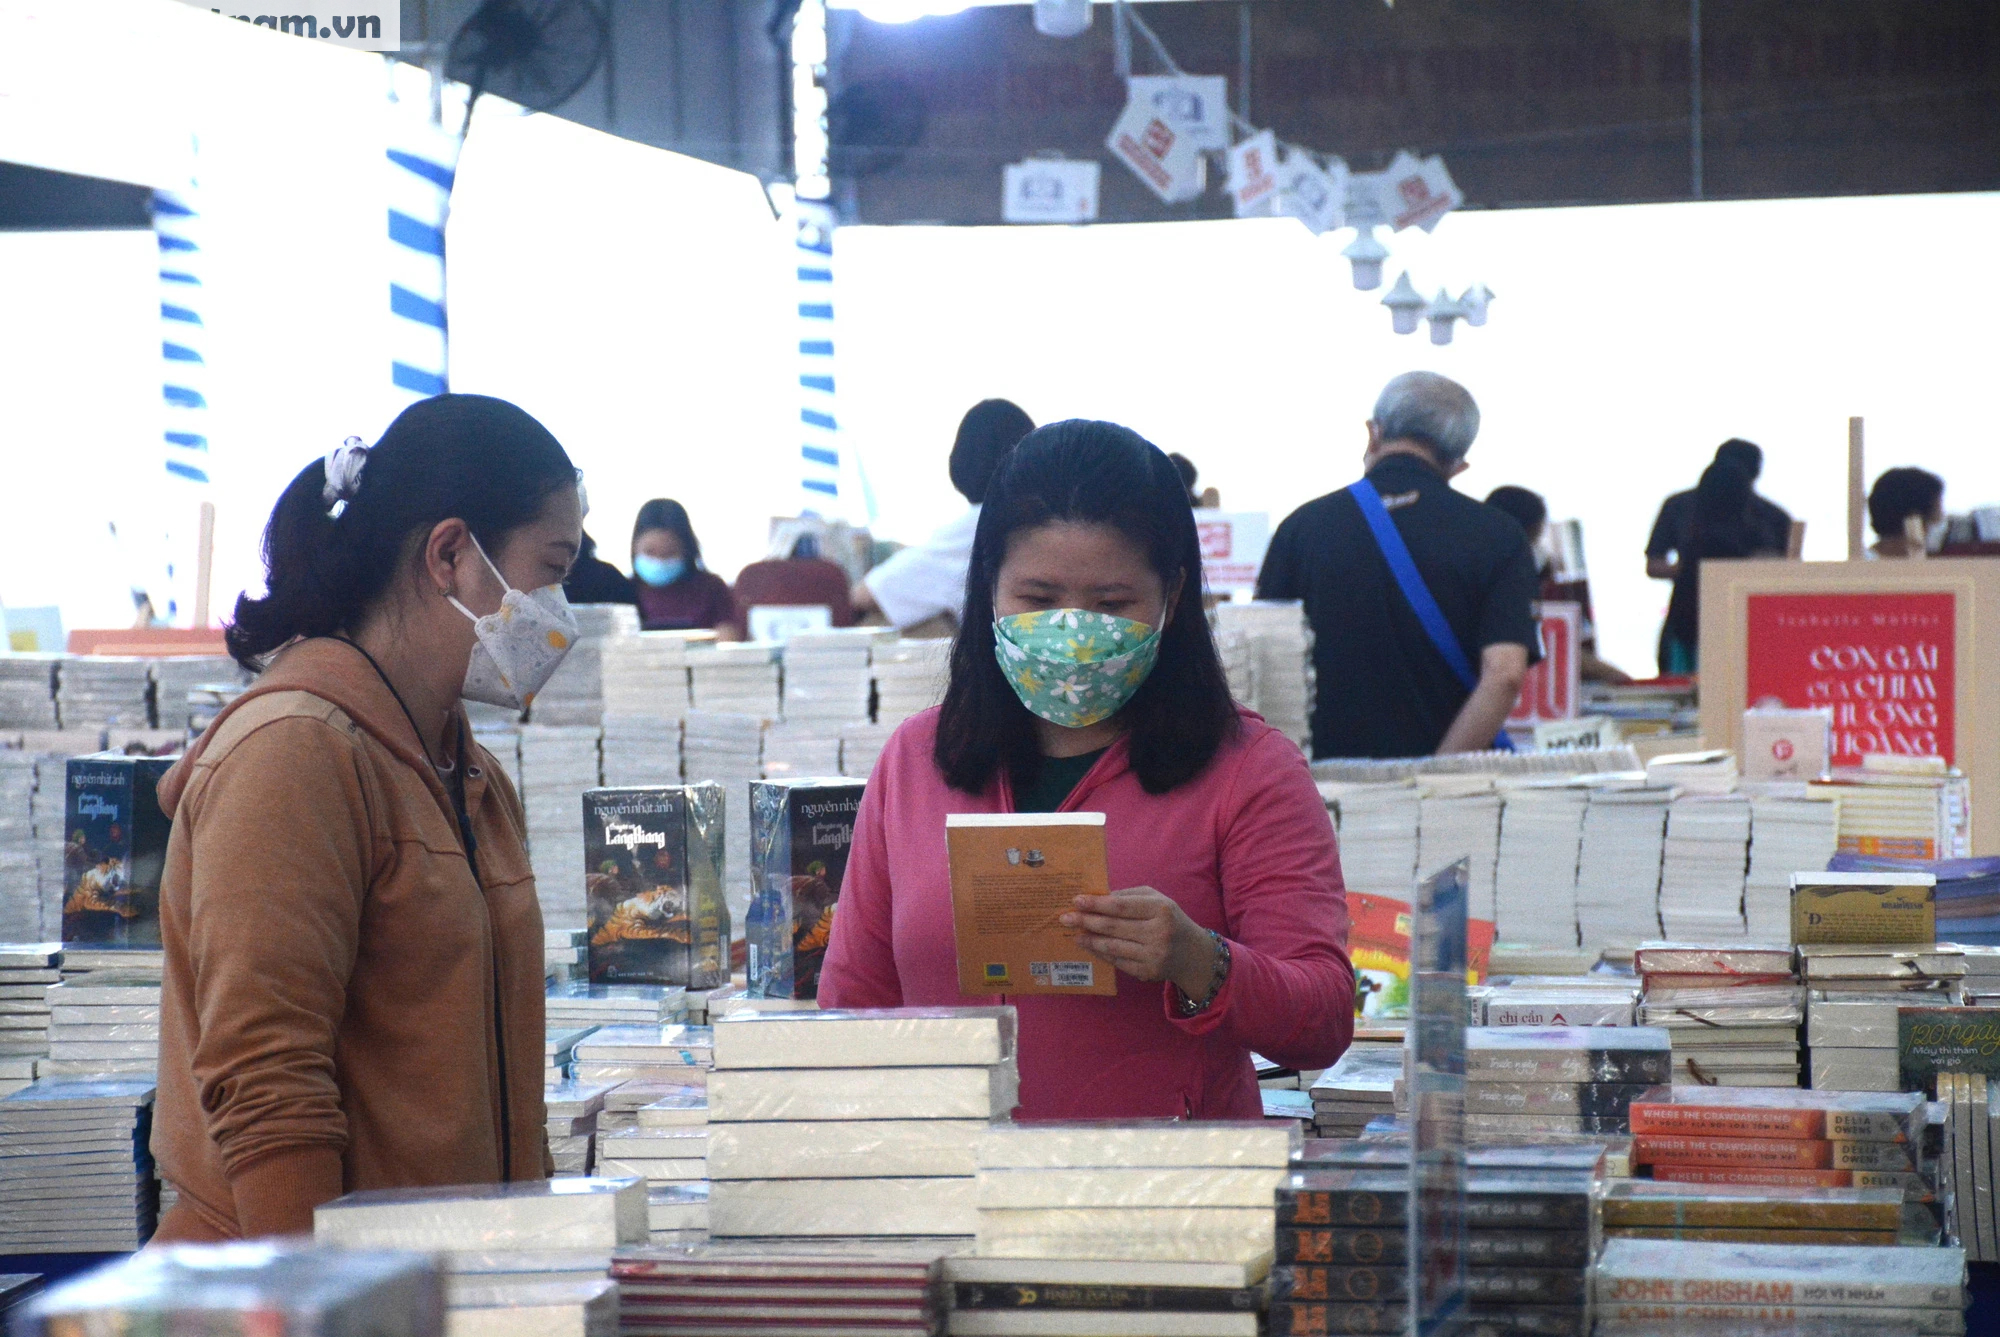 TPHCM: Ngày sách và văn hóa đọc thu hút nhiều độc giả - Ảnh 1.